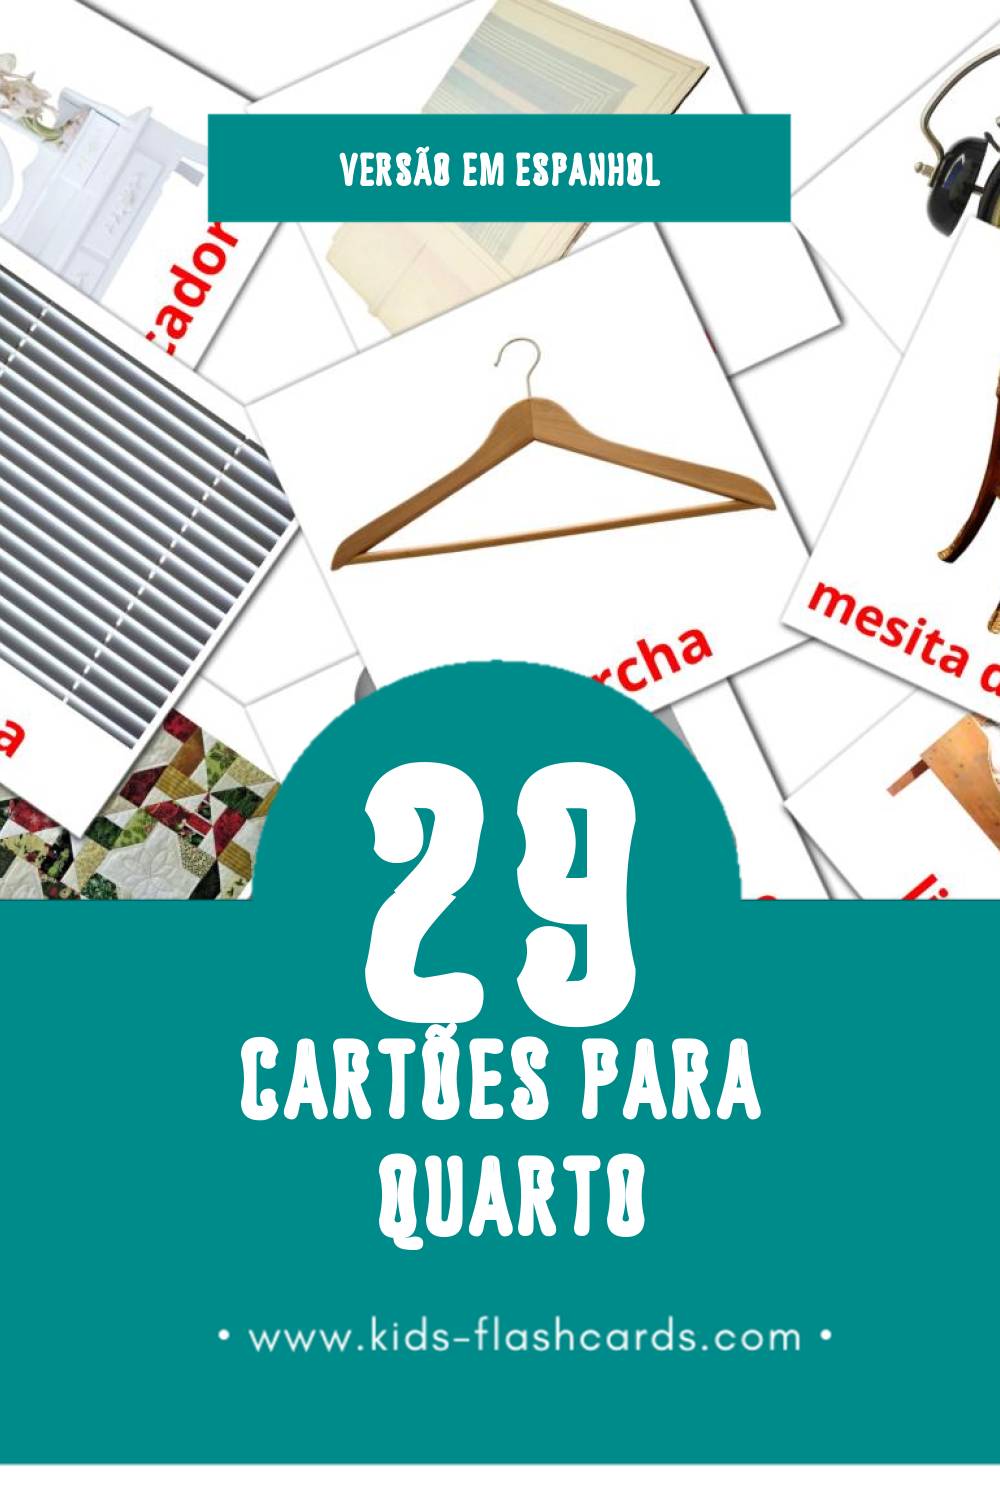 Flashcards de Dormitorio Visuais para Toddlers (29 cartões em Espanhol)